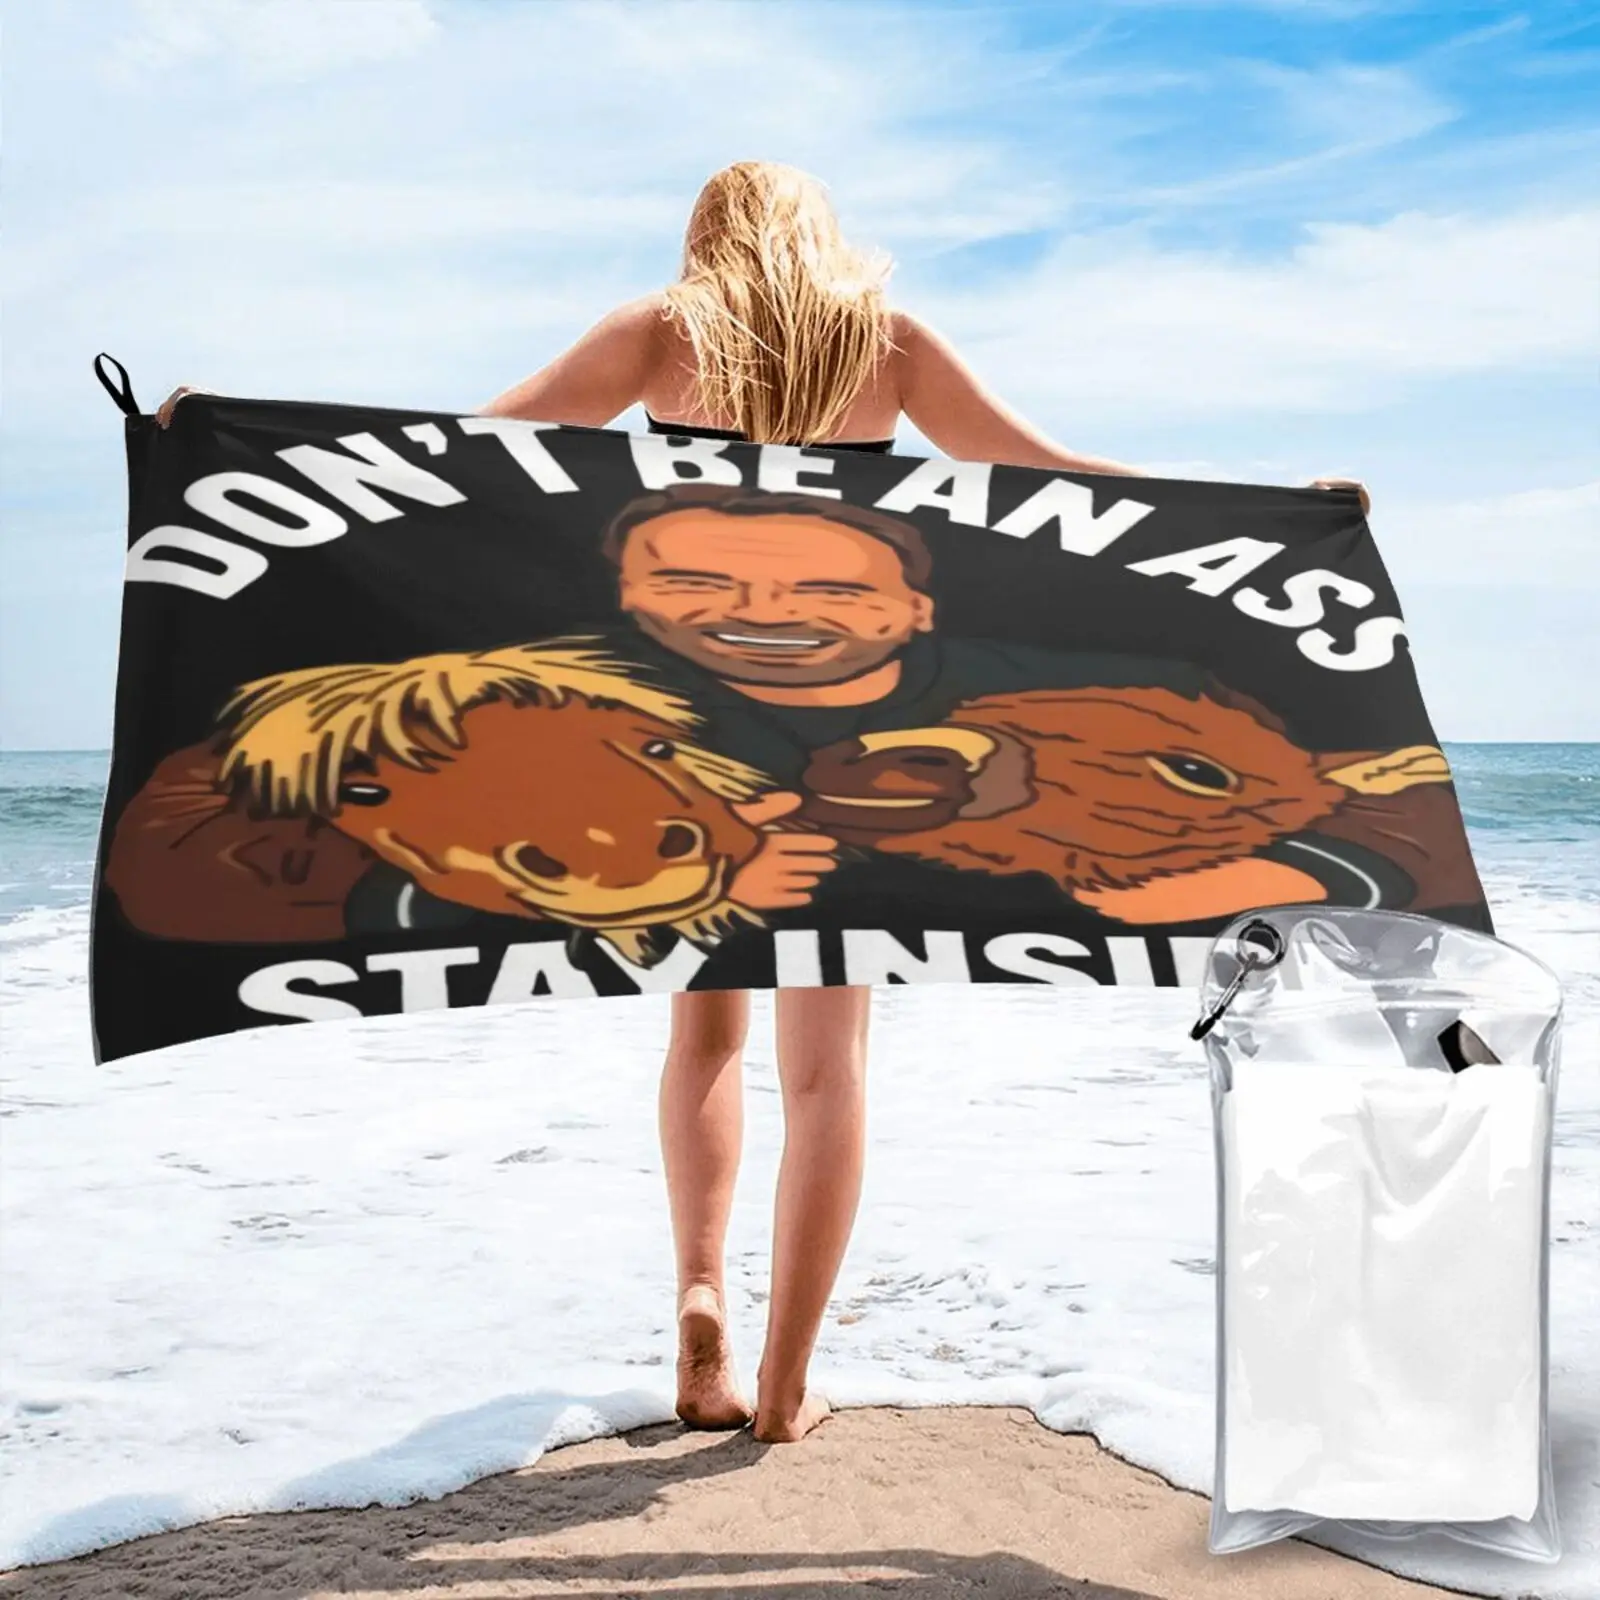 

Пляжное полотенце Арнольд Шварценеггер «Don Be A Ass», полотенце для рук, полотенце для волос, набор мебели для ванной, Большое банное полотенце, ...